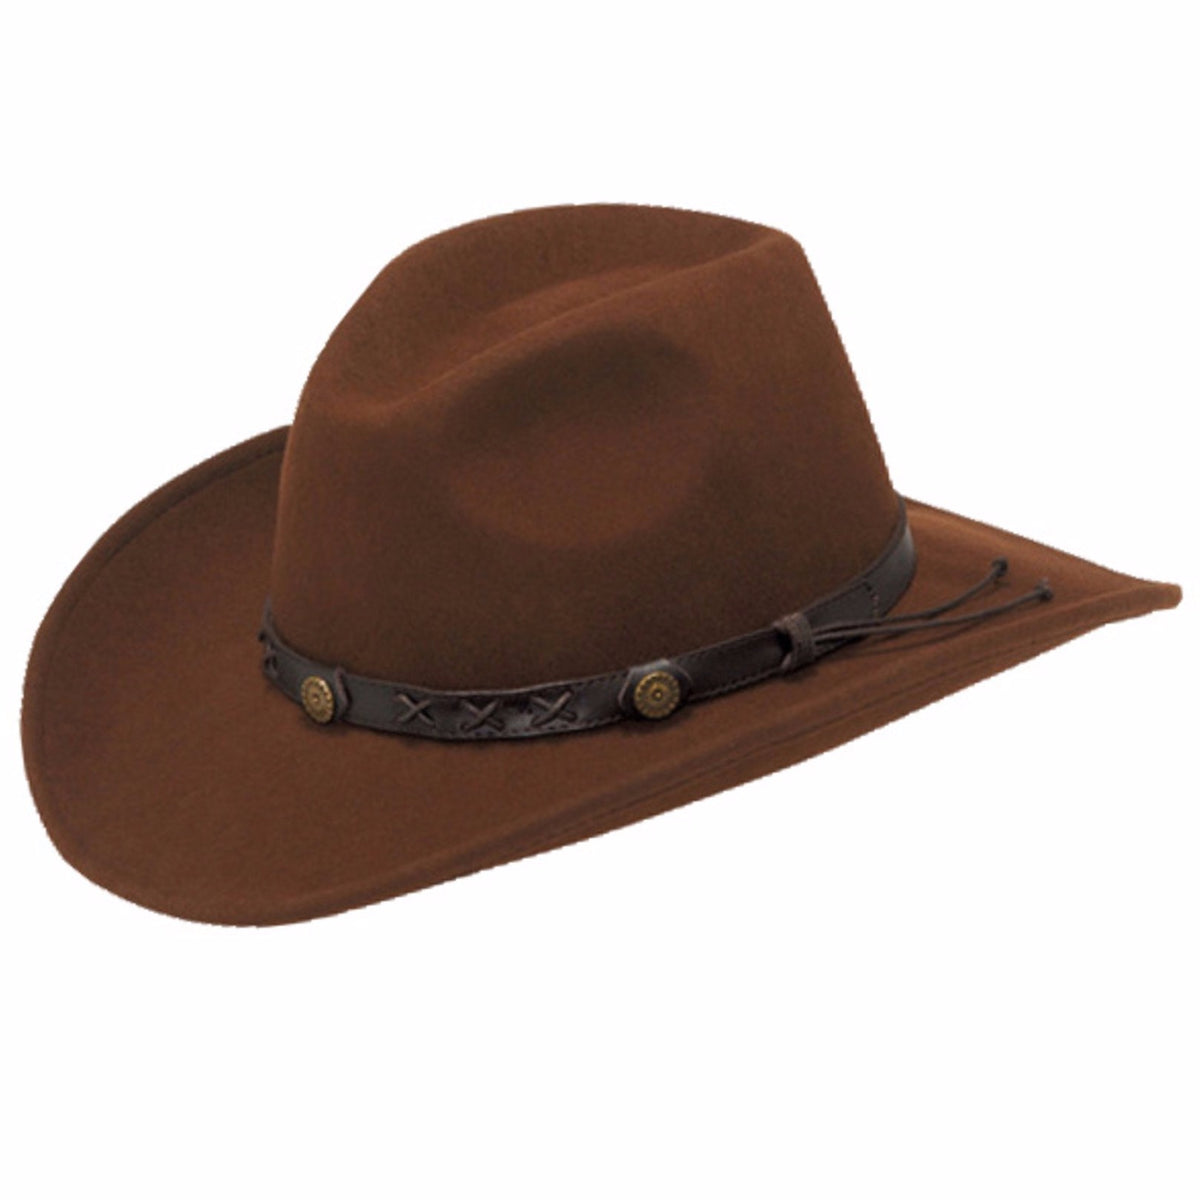 Twister Dakota Crushable Wool Felt Hat in Chestnut